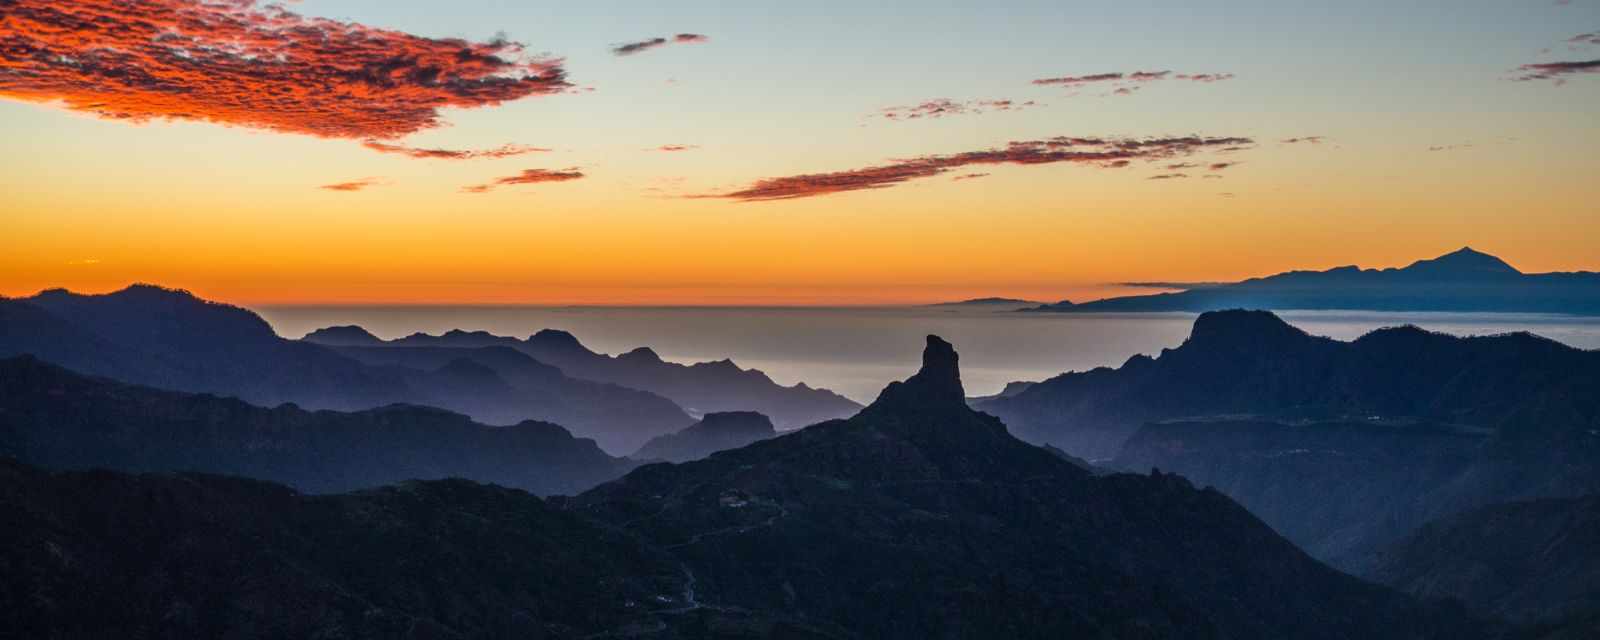 5 Best Sunset Spots in Gran Canaria